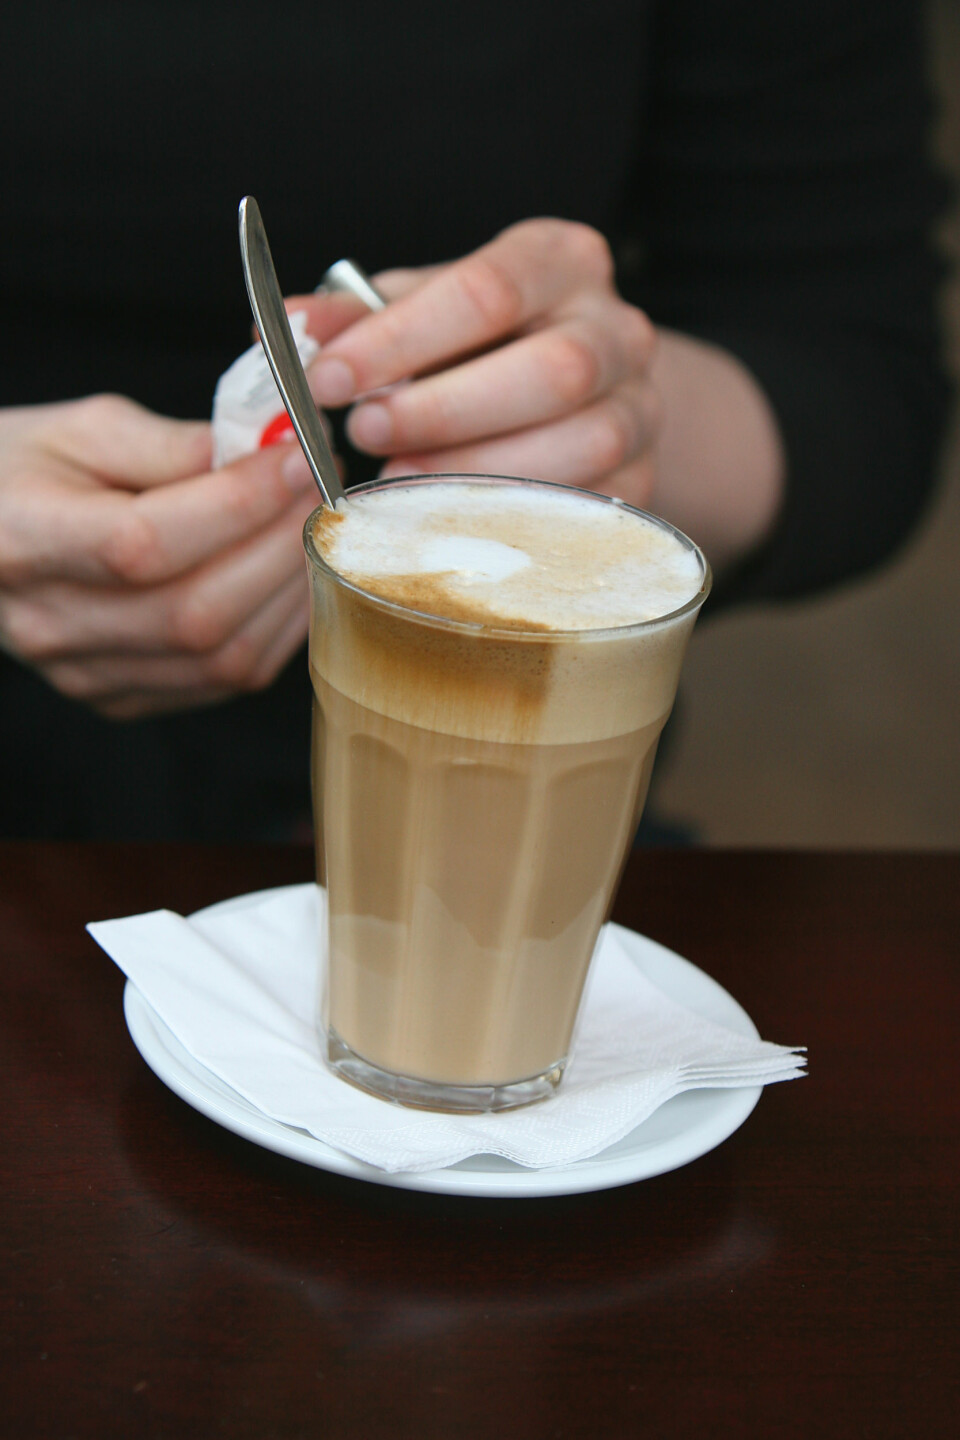 'Koffein er også et sentralstimulerende middel, og brukes flittig av studenter. (Illustrasjonsfoto: www.colourbox.no)'